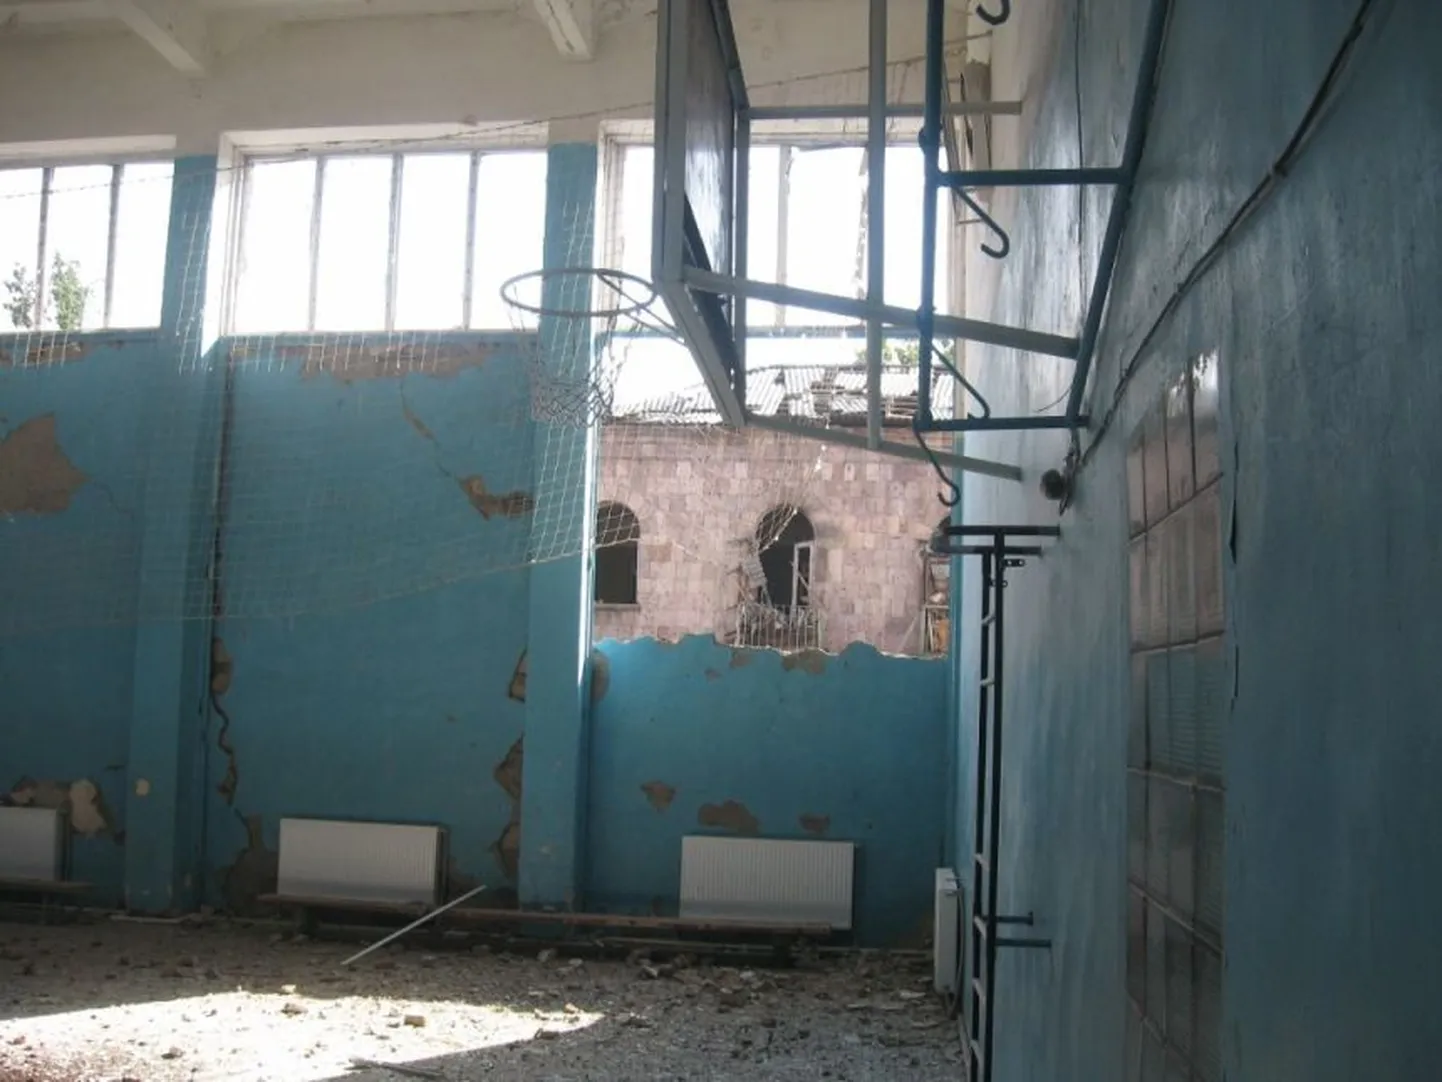 Gruusia Gori 7. kooli sõjas saadud purustused